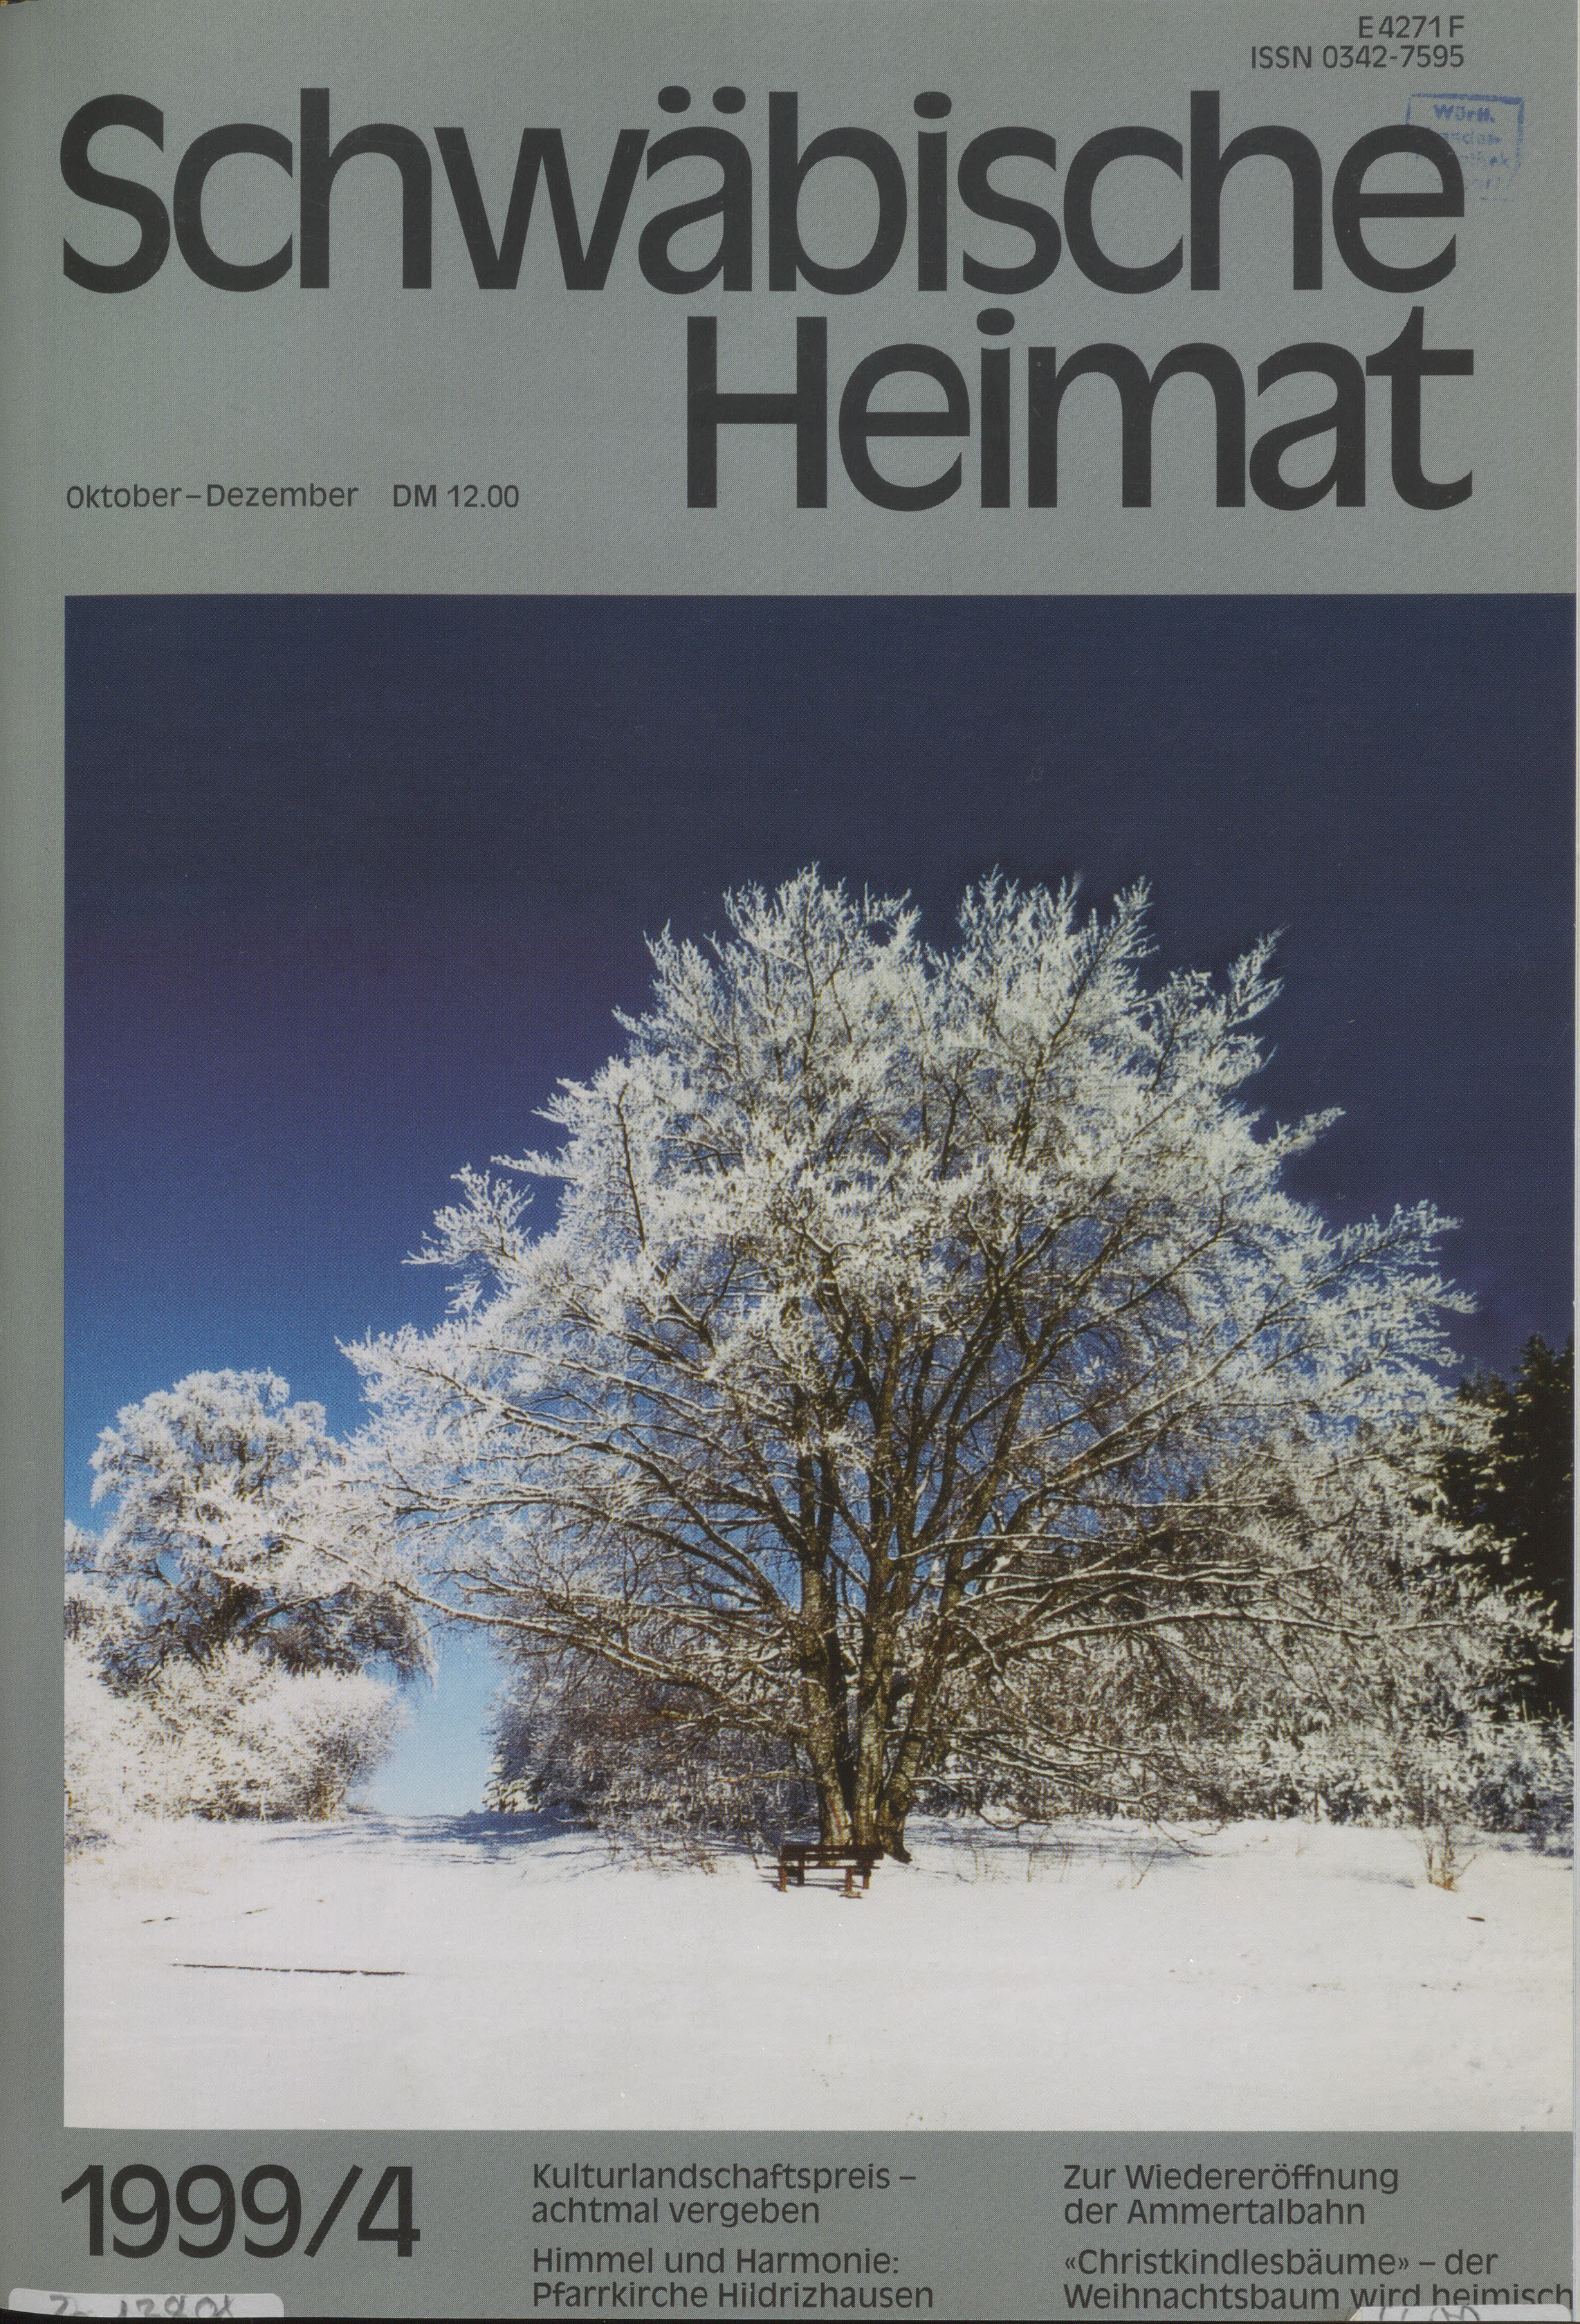                     Ansehen Bd. 50 Nr. 4 (1999): Schwäbische Heimat
                